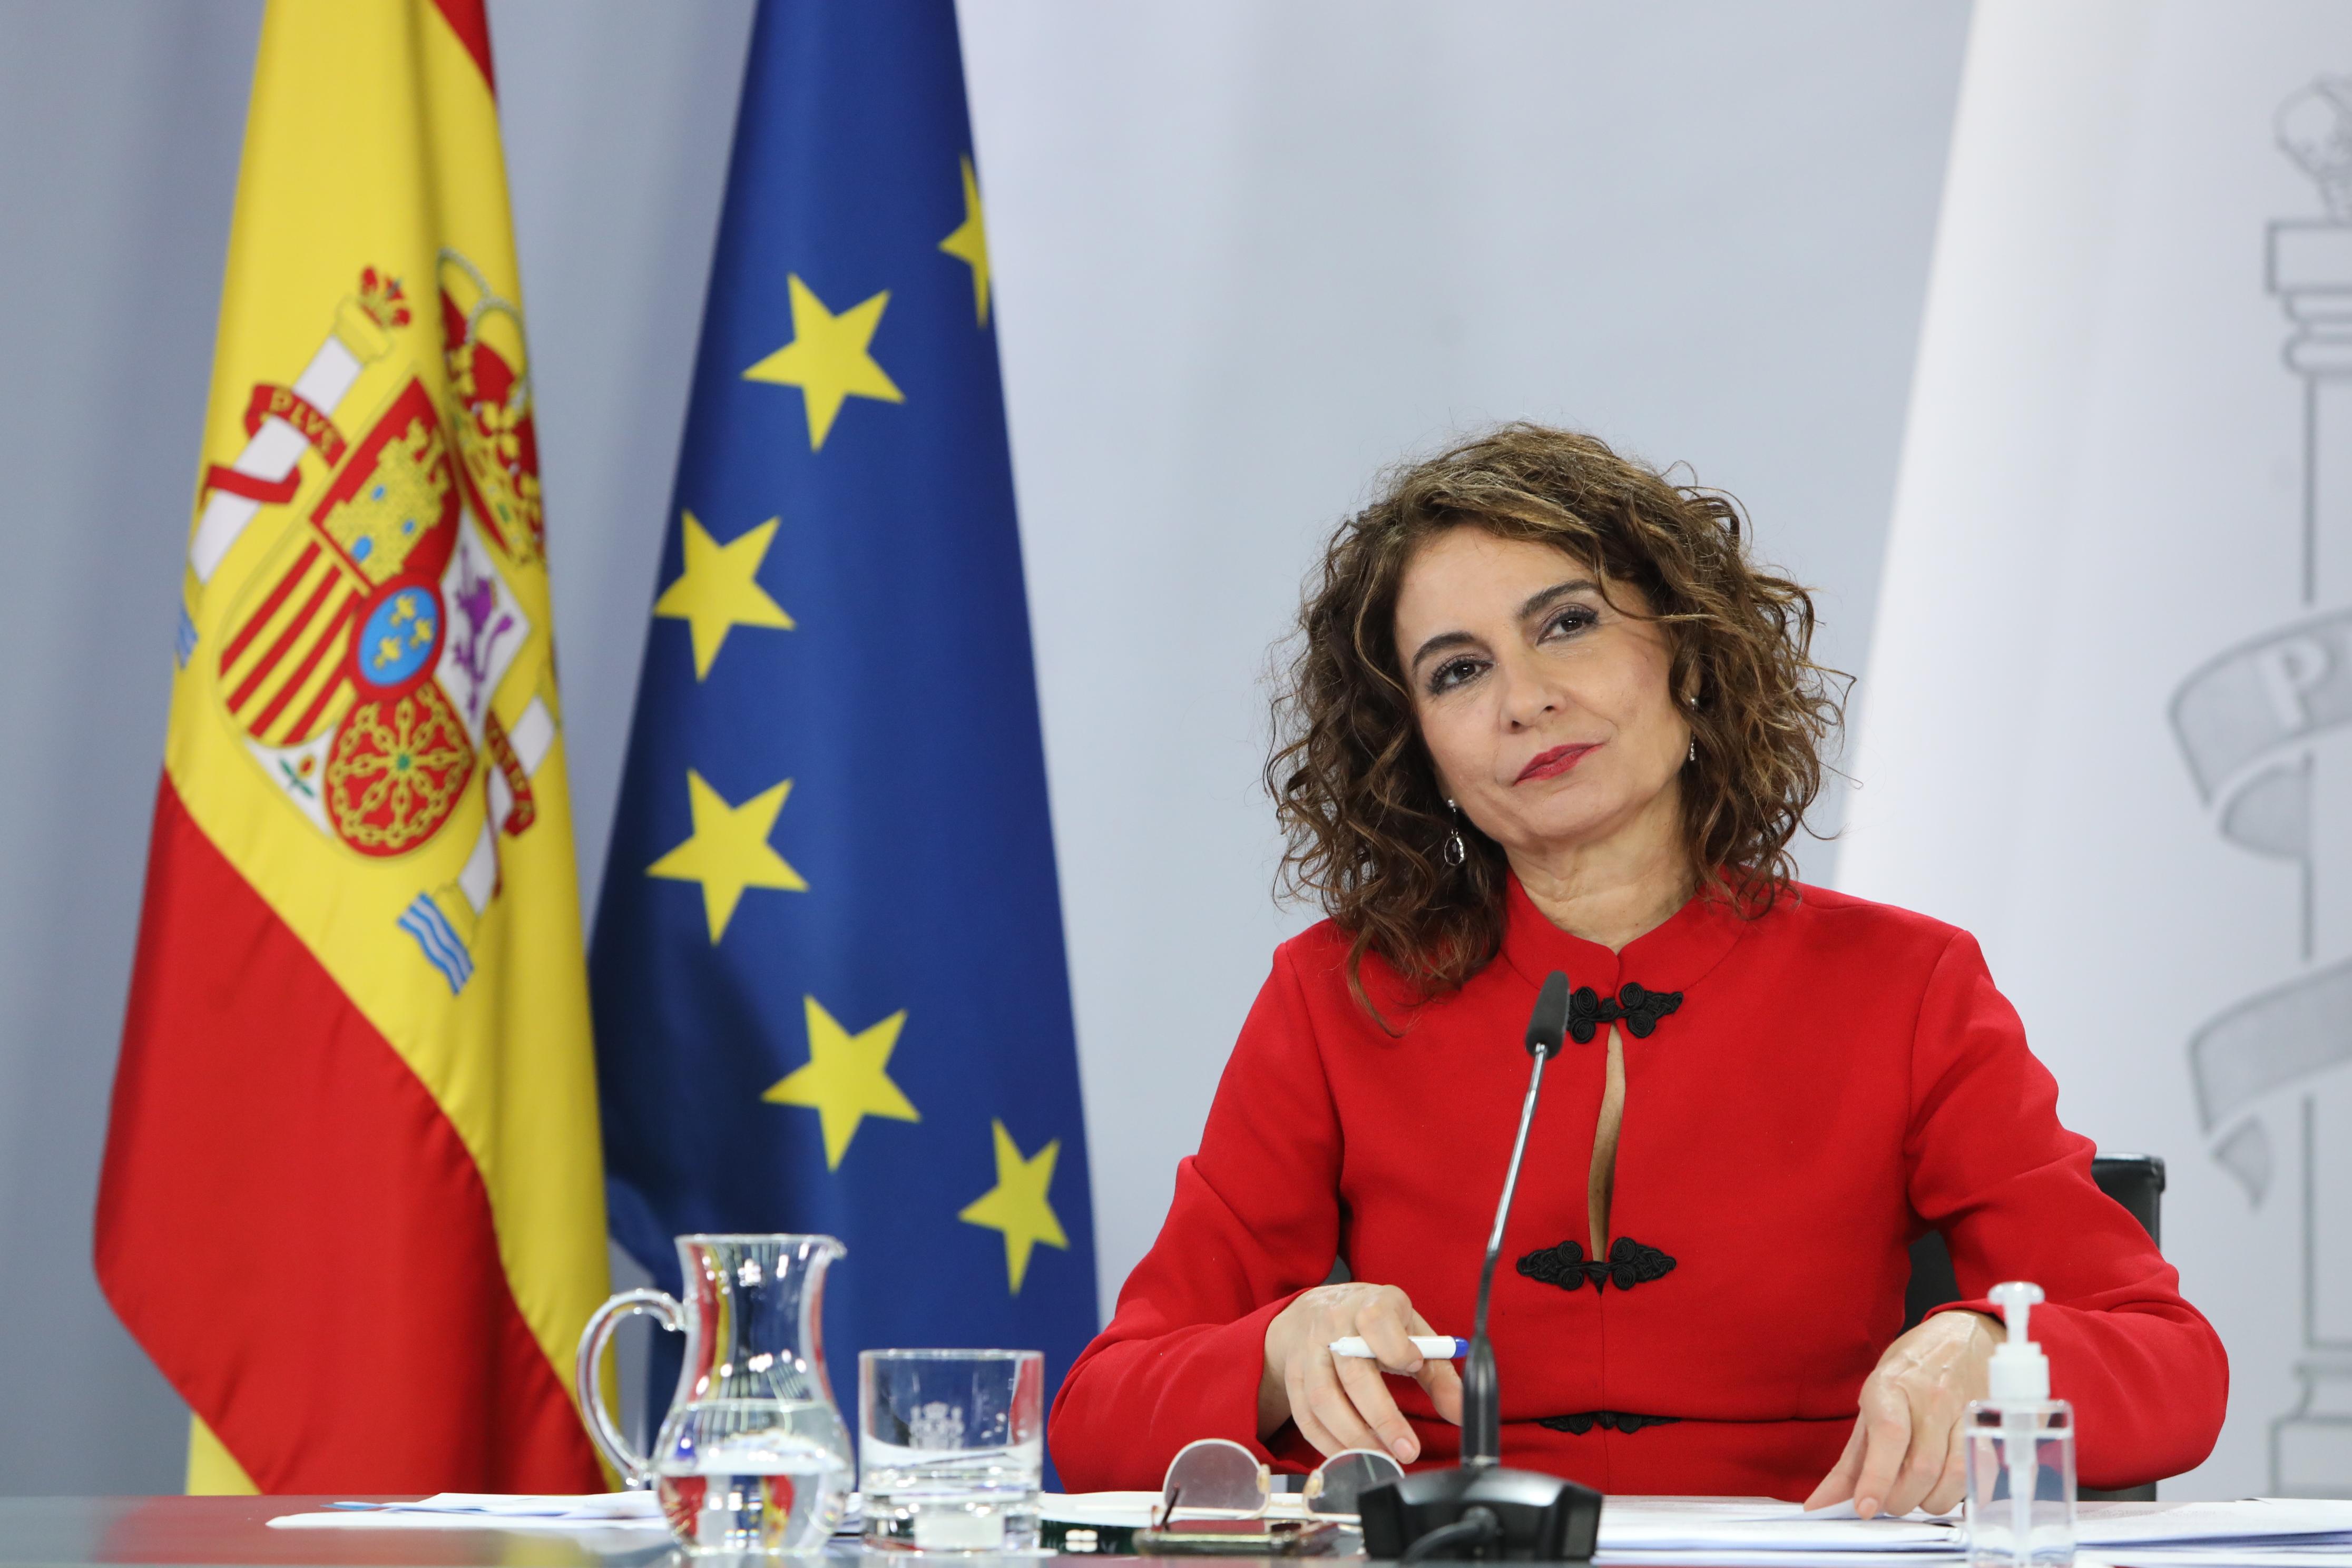 La portavoz del Gobierno y ministra de Hacienda, María Jesús Montero interviene durante la rueda de prensa posterior al Consejo de Ministros. Fuente: Europa Press.